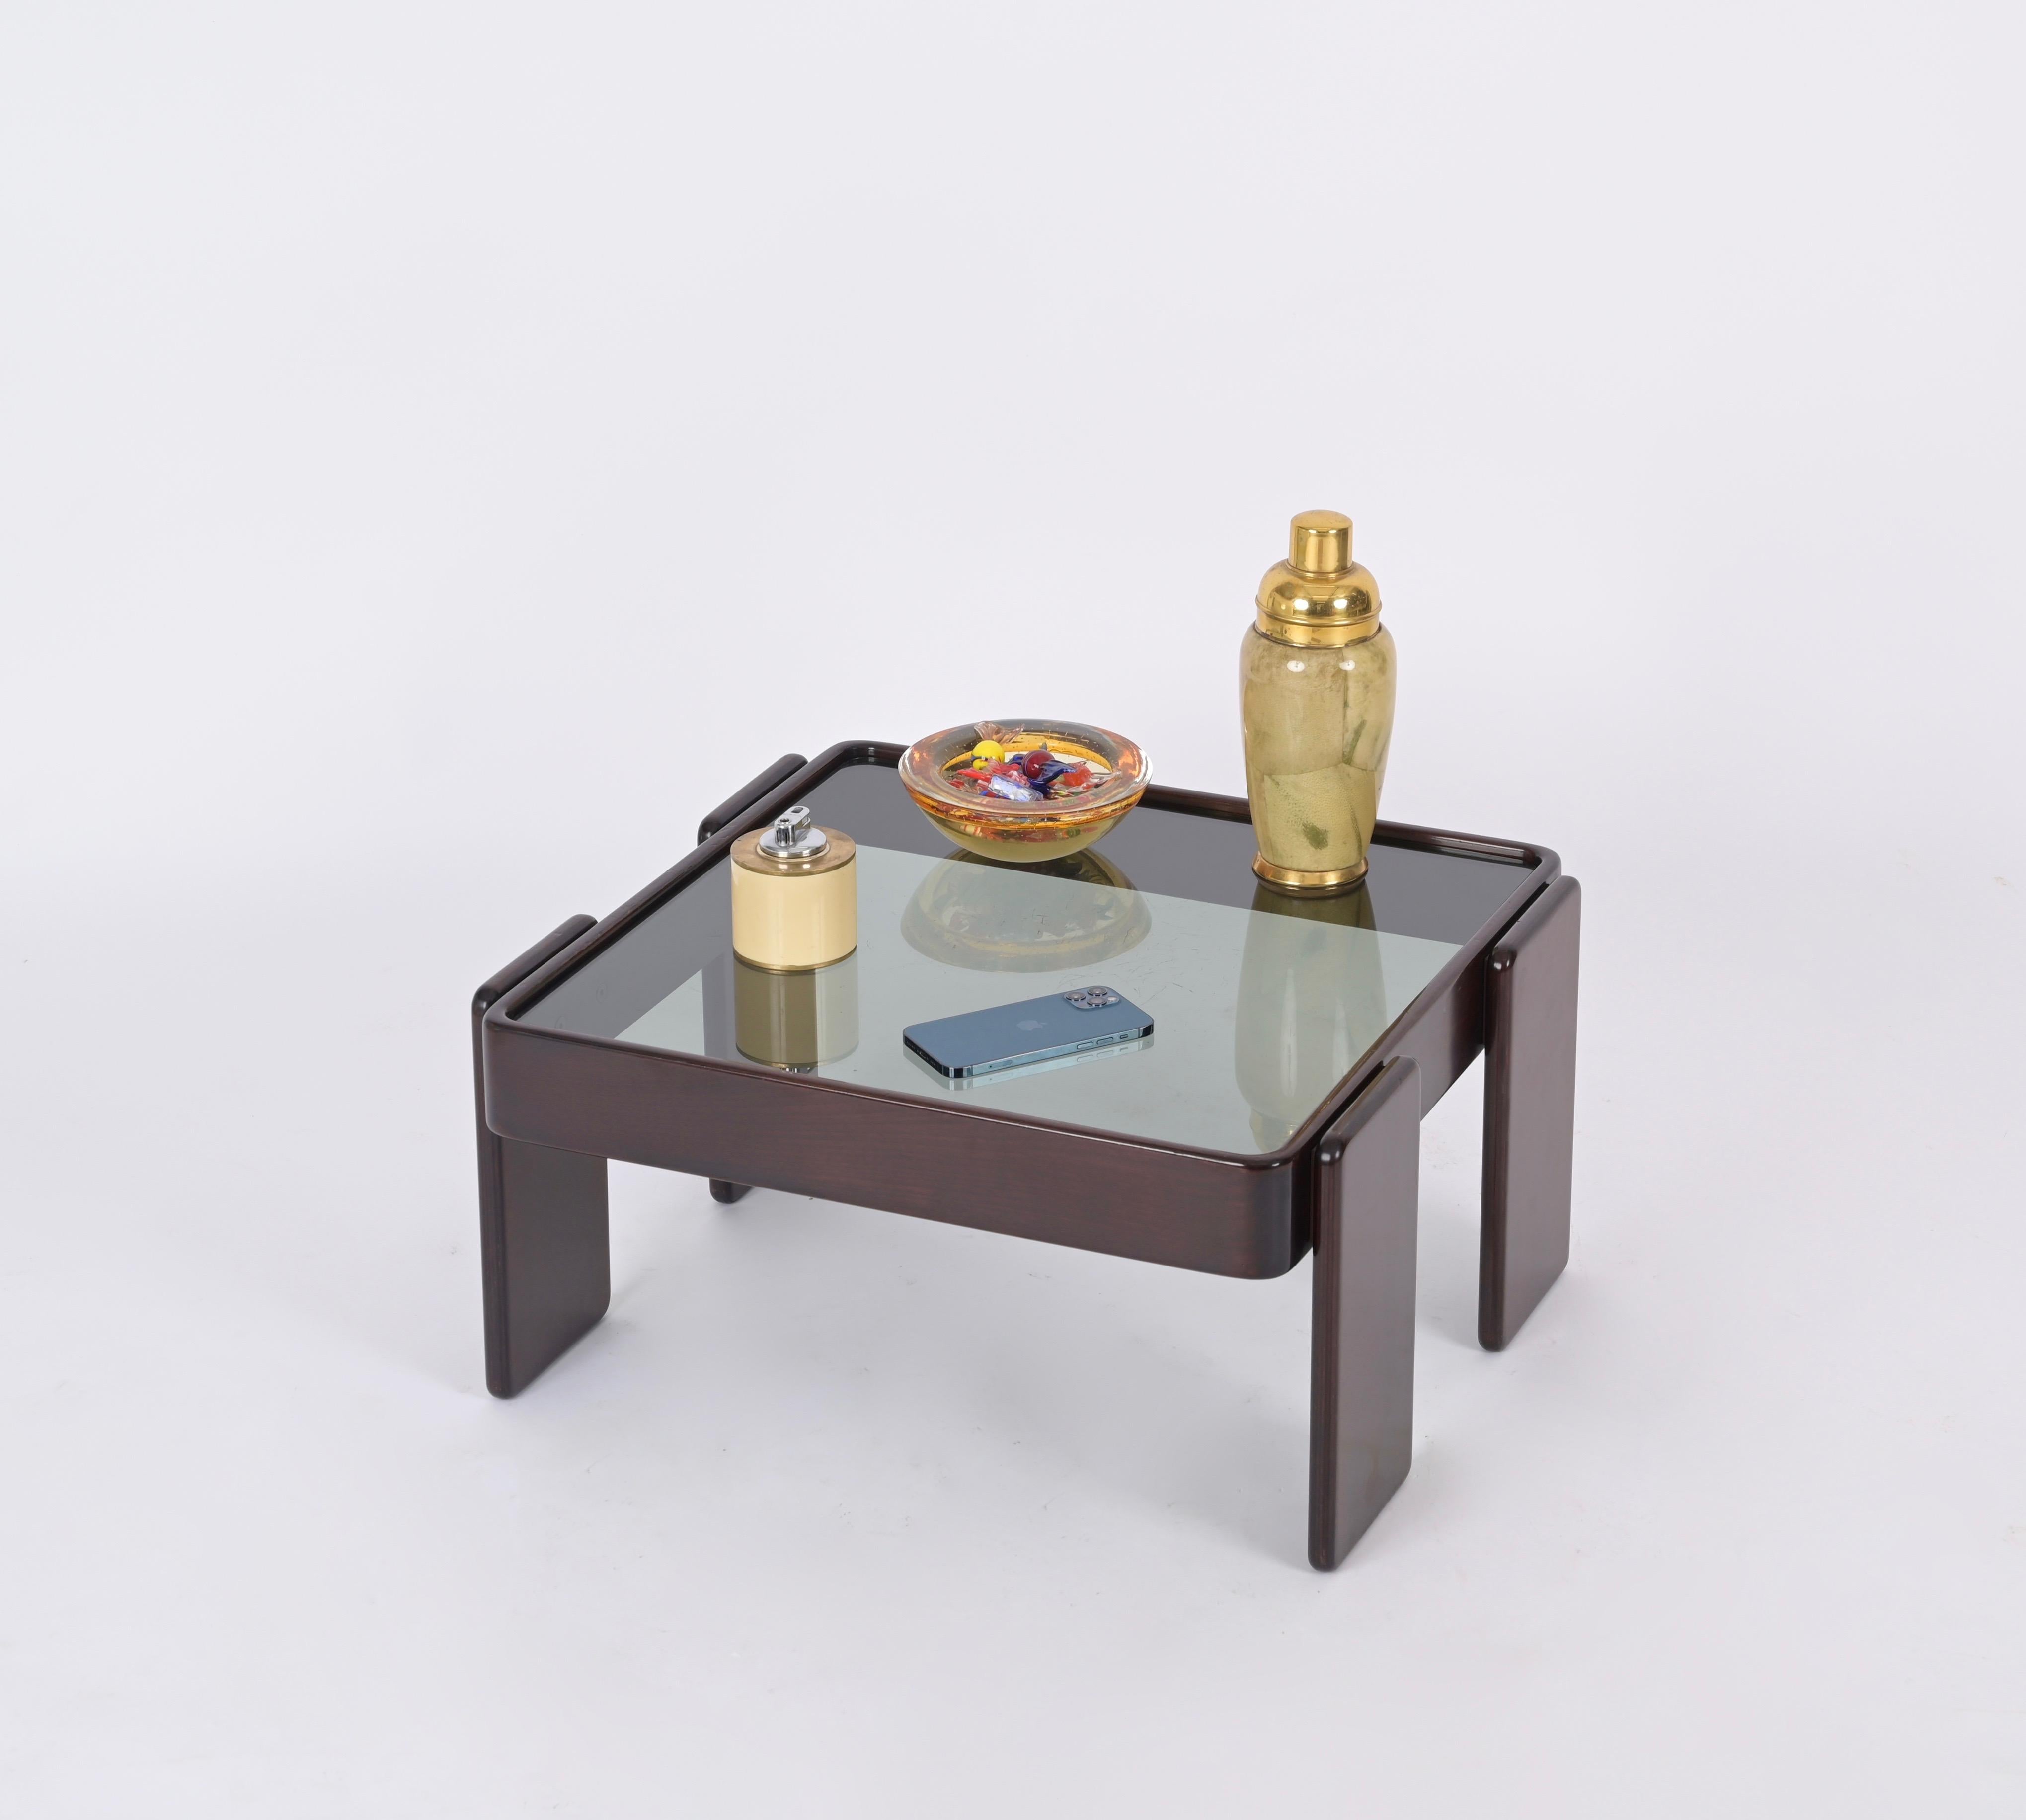 Superbe table basse carrée du milieu du siècle en bois de noyer avec plateau en verre fumé. Cette table basse emblématique a été conçue par Gianfranco Frattini pour Cassina, en Italie, dans les années 1970.  

Cette table basse élégante présente une